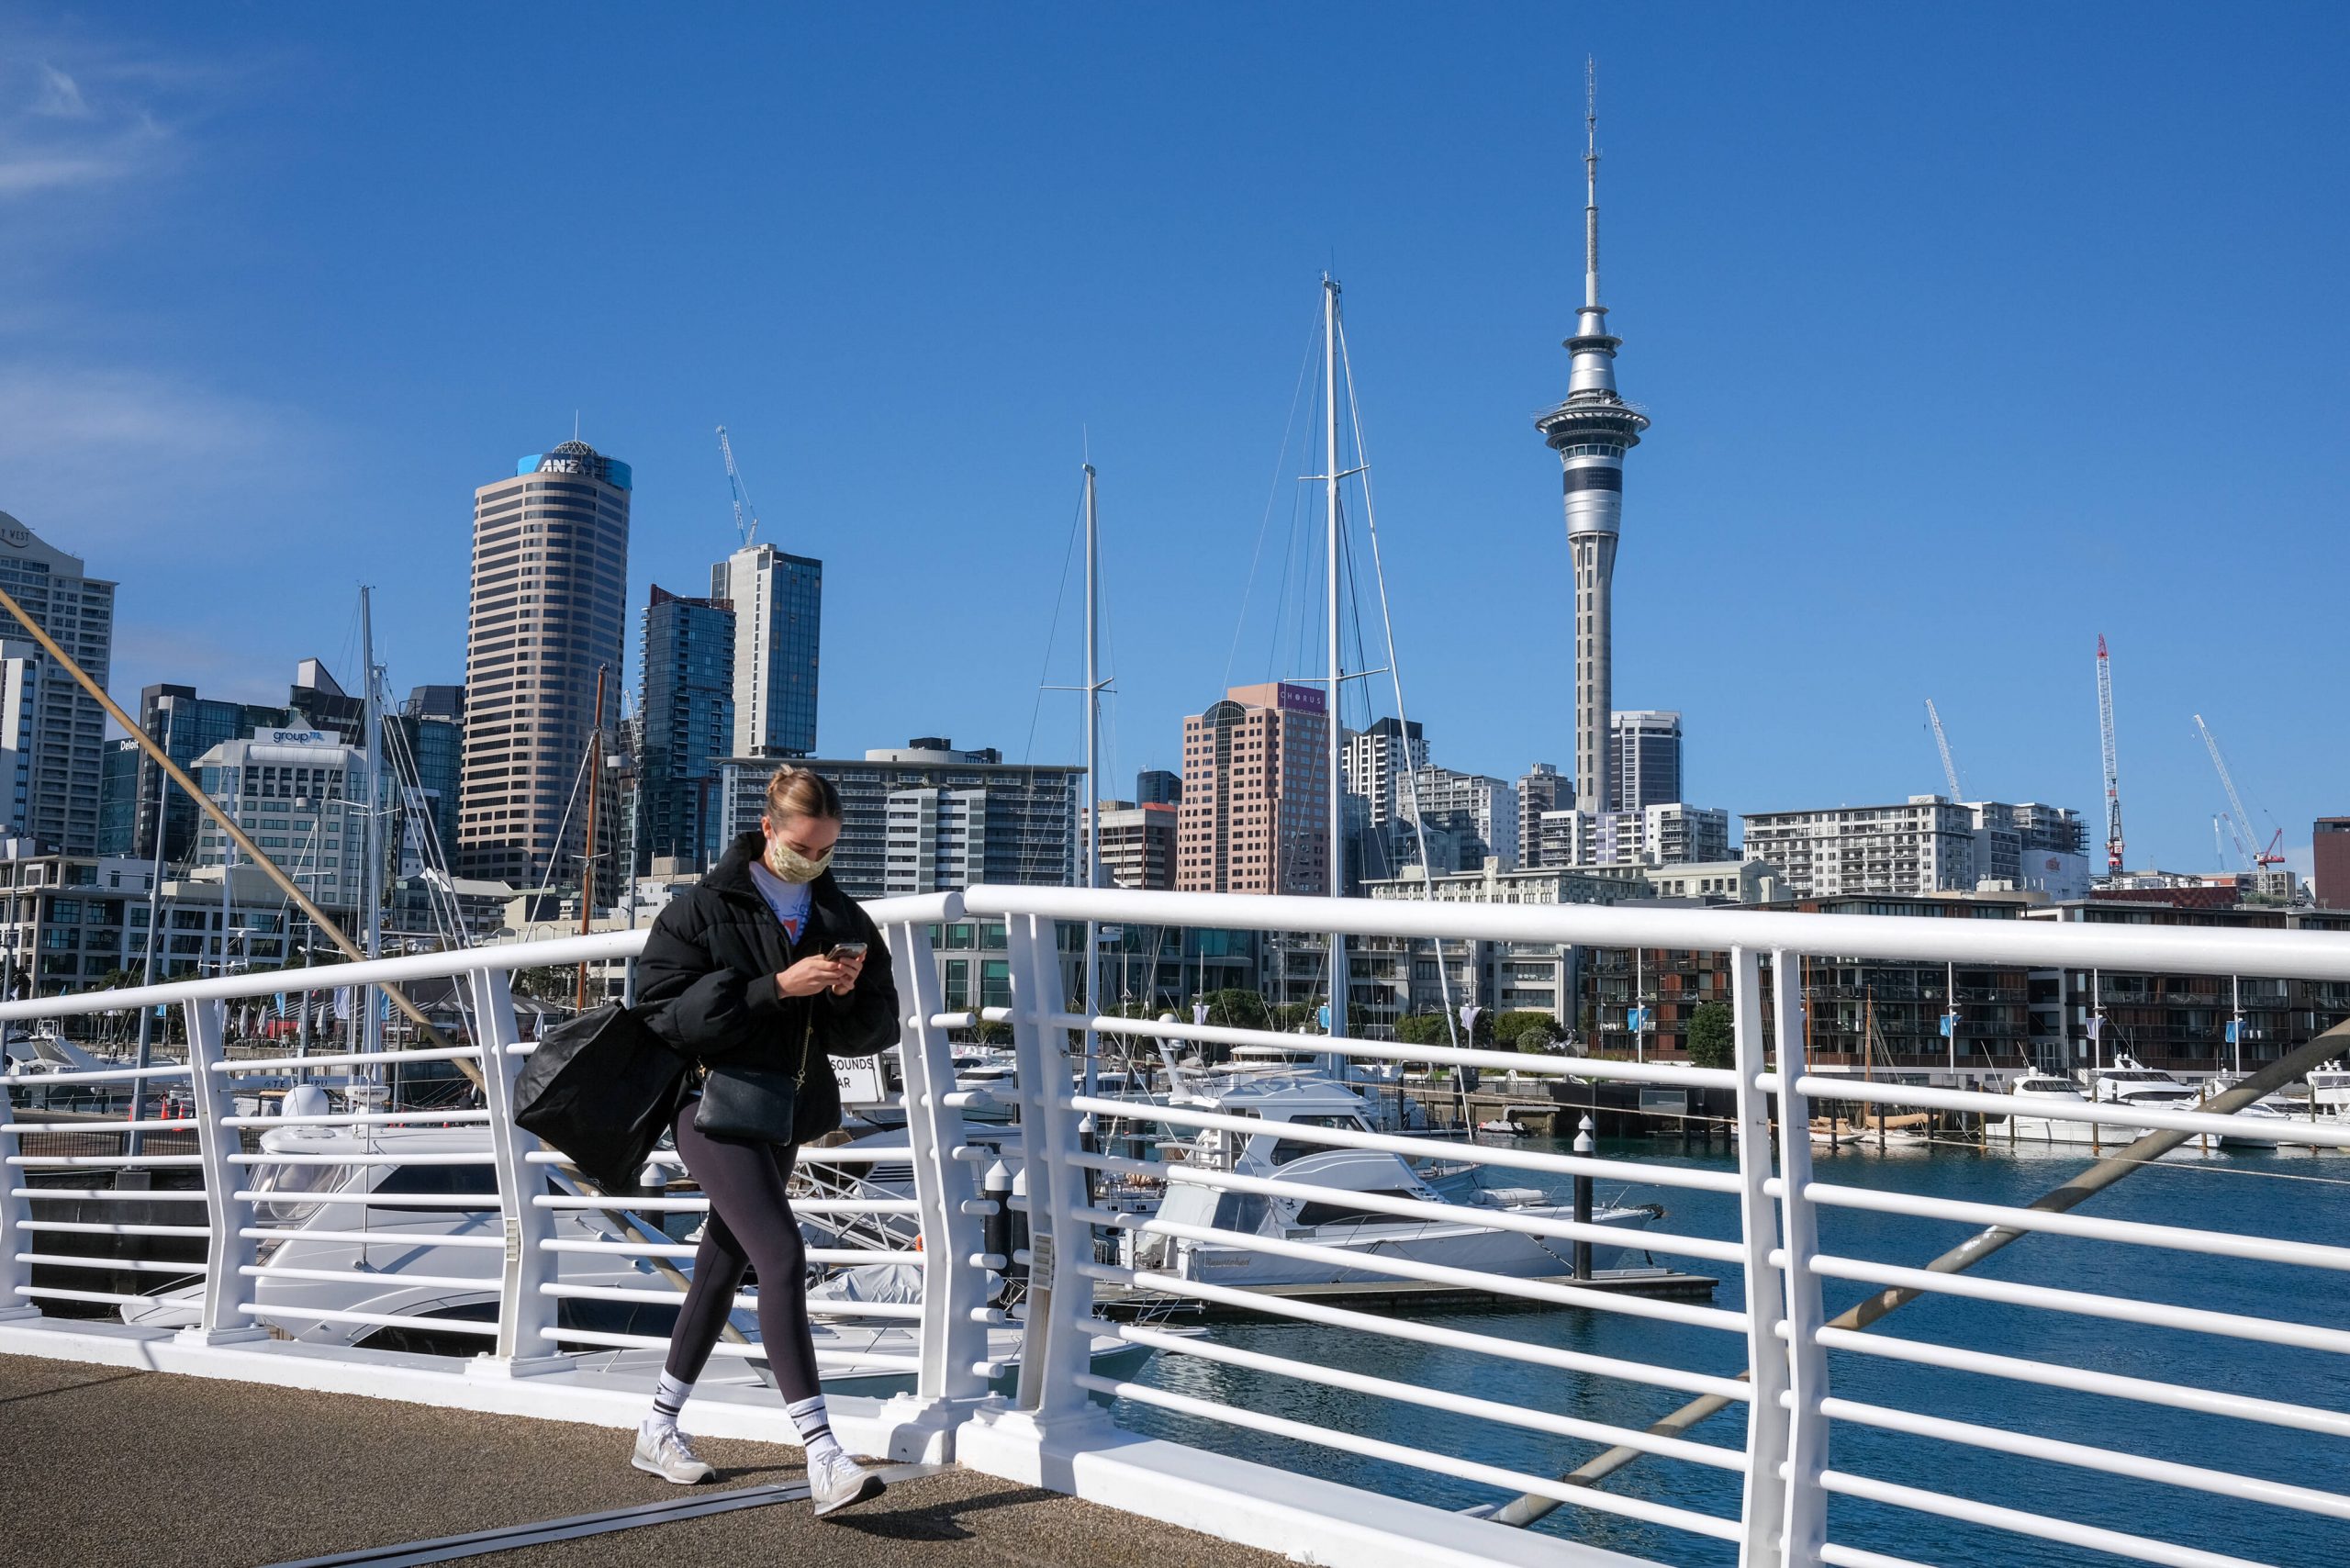 Masken tragen und wenn möglich zuhause bleiben: In Auckland gelten wieder strenge Regeln.